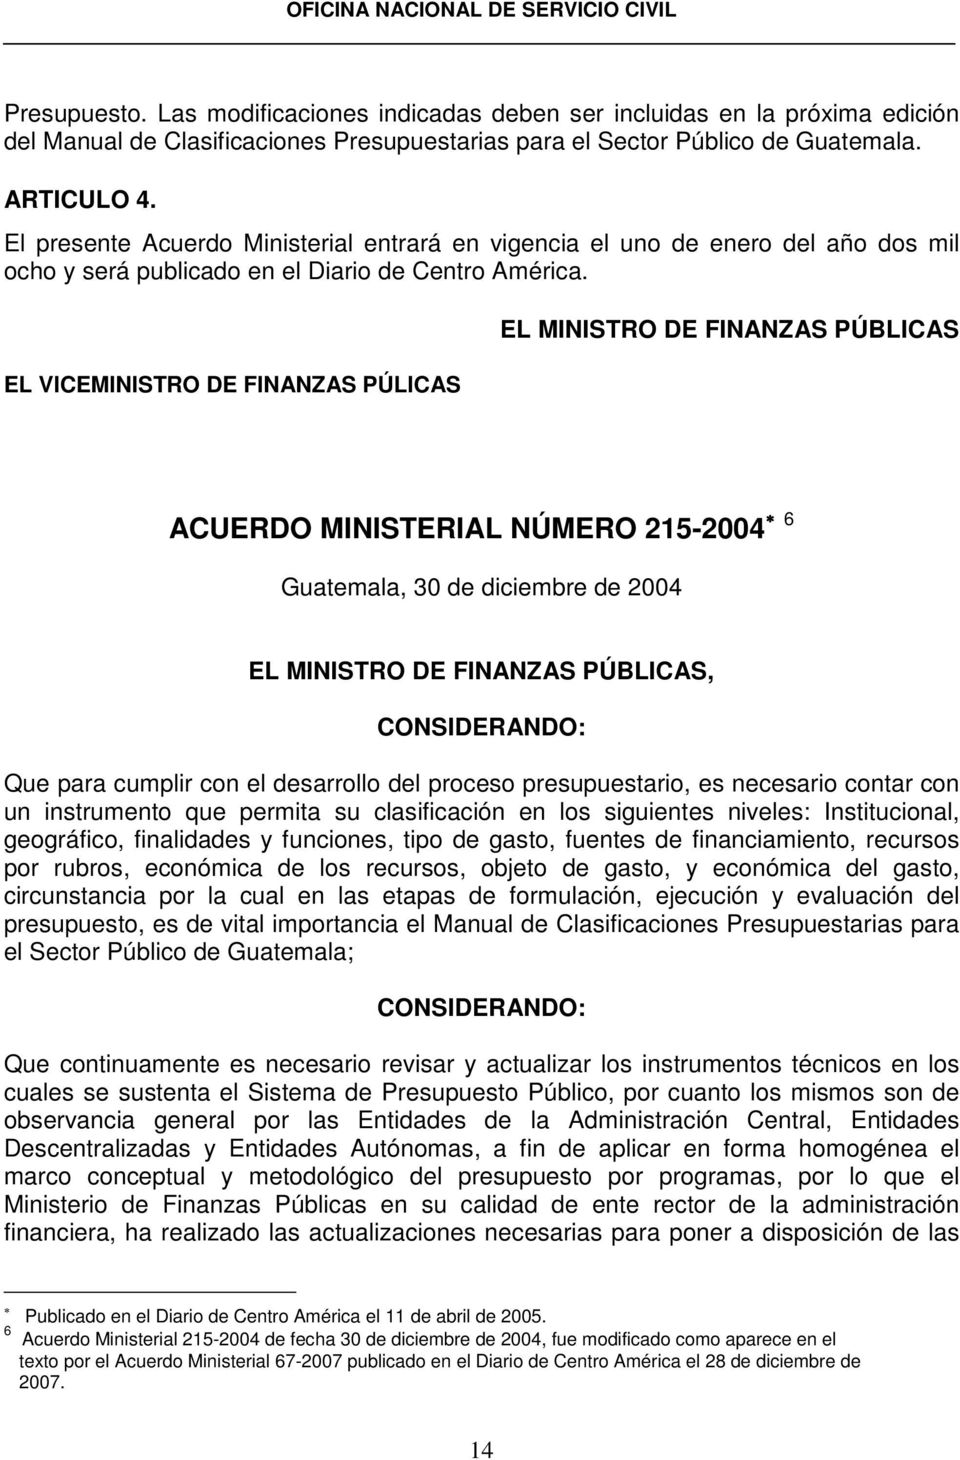 EL VICEMINISTRO DE FINANZAS PÚLICAS EL MINISTRO DE FINANZAS PÚBLICAS ACUERDO MINISTERIAL NÚMERO 215-2004 6 Guatemala, 30 de diciembre de 2004 EL MINISTRO DE FINANZAS PÚBLICAS, CONSIDERANDO: Que para